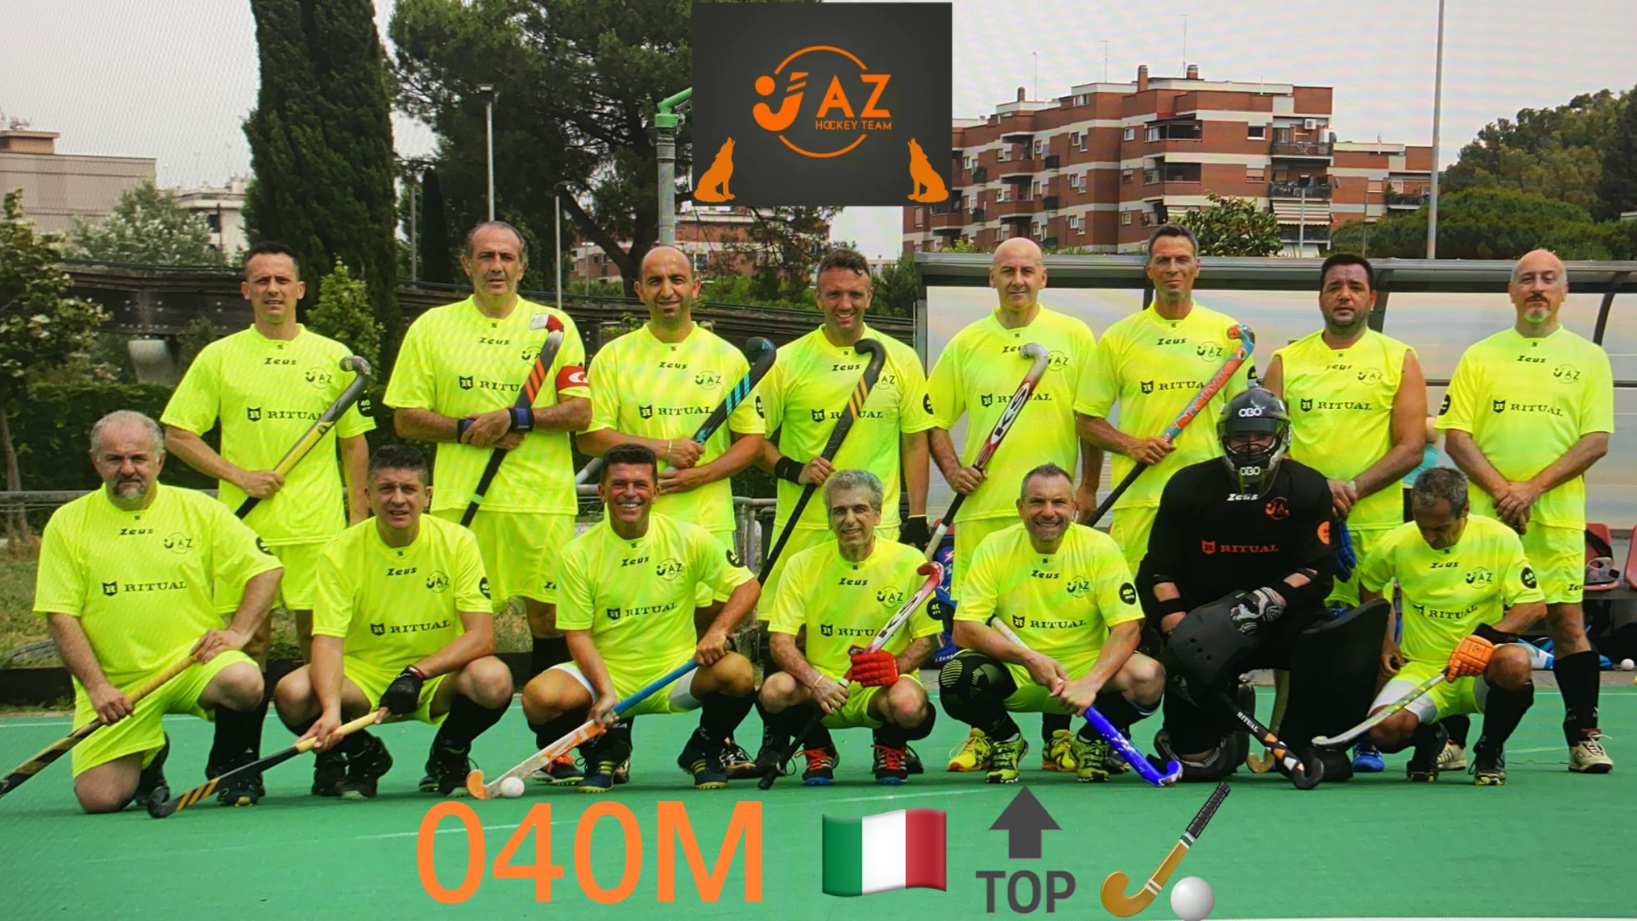 L’A.S. Dilettantistica AZ Hockey Team si aggiudica il titolo di vice Campione D’Italia nella categoria O40M e festeggia un anno di attività